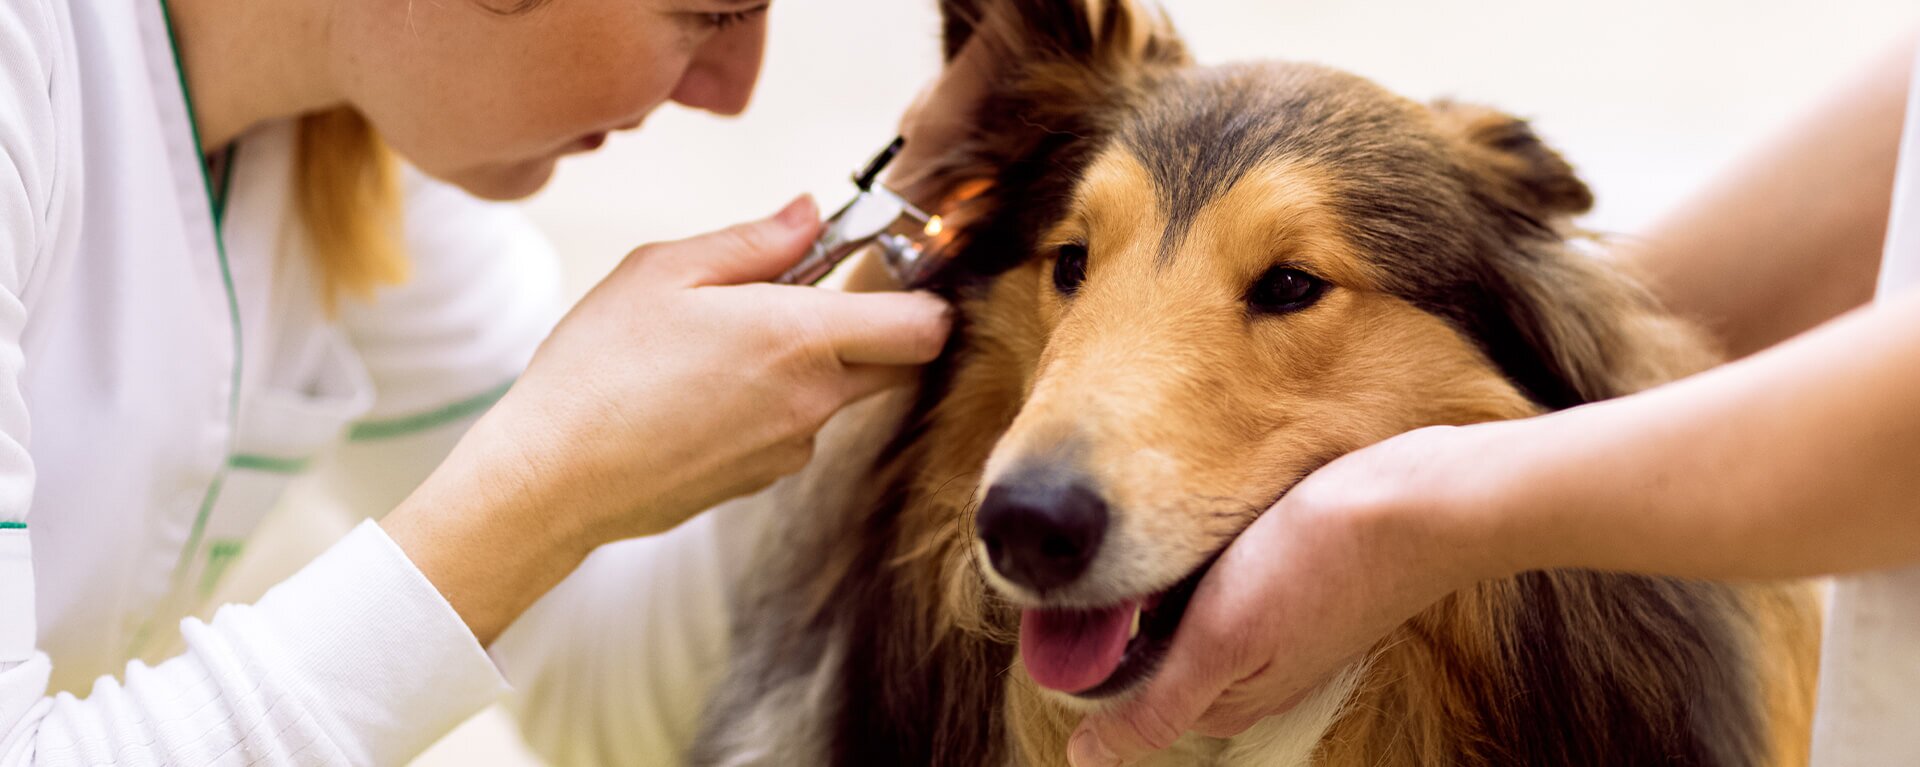 Проверка здоровья взрослой собаки. Самые распространенные заболевания